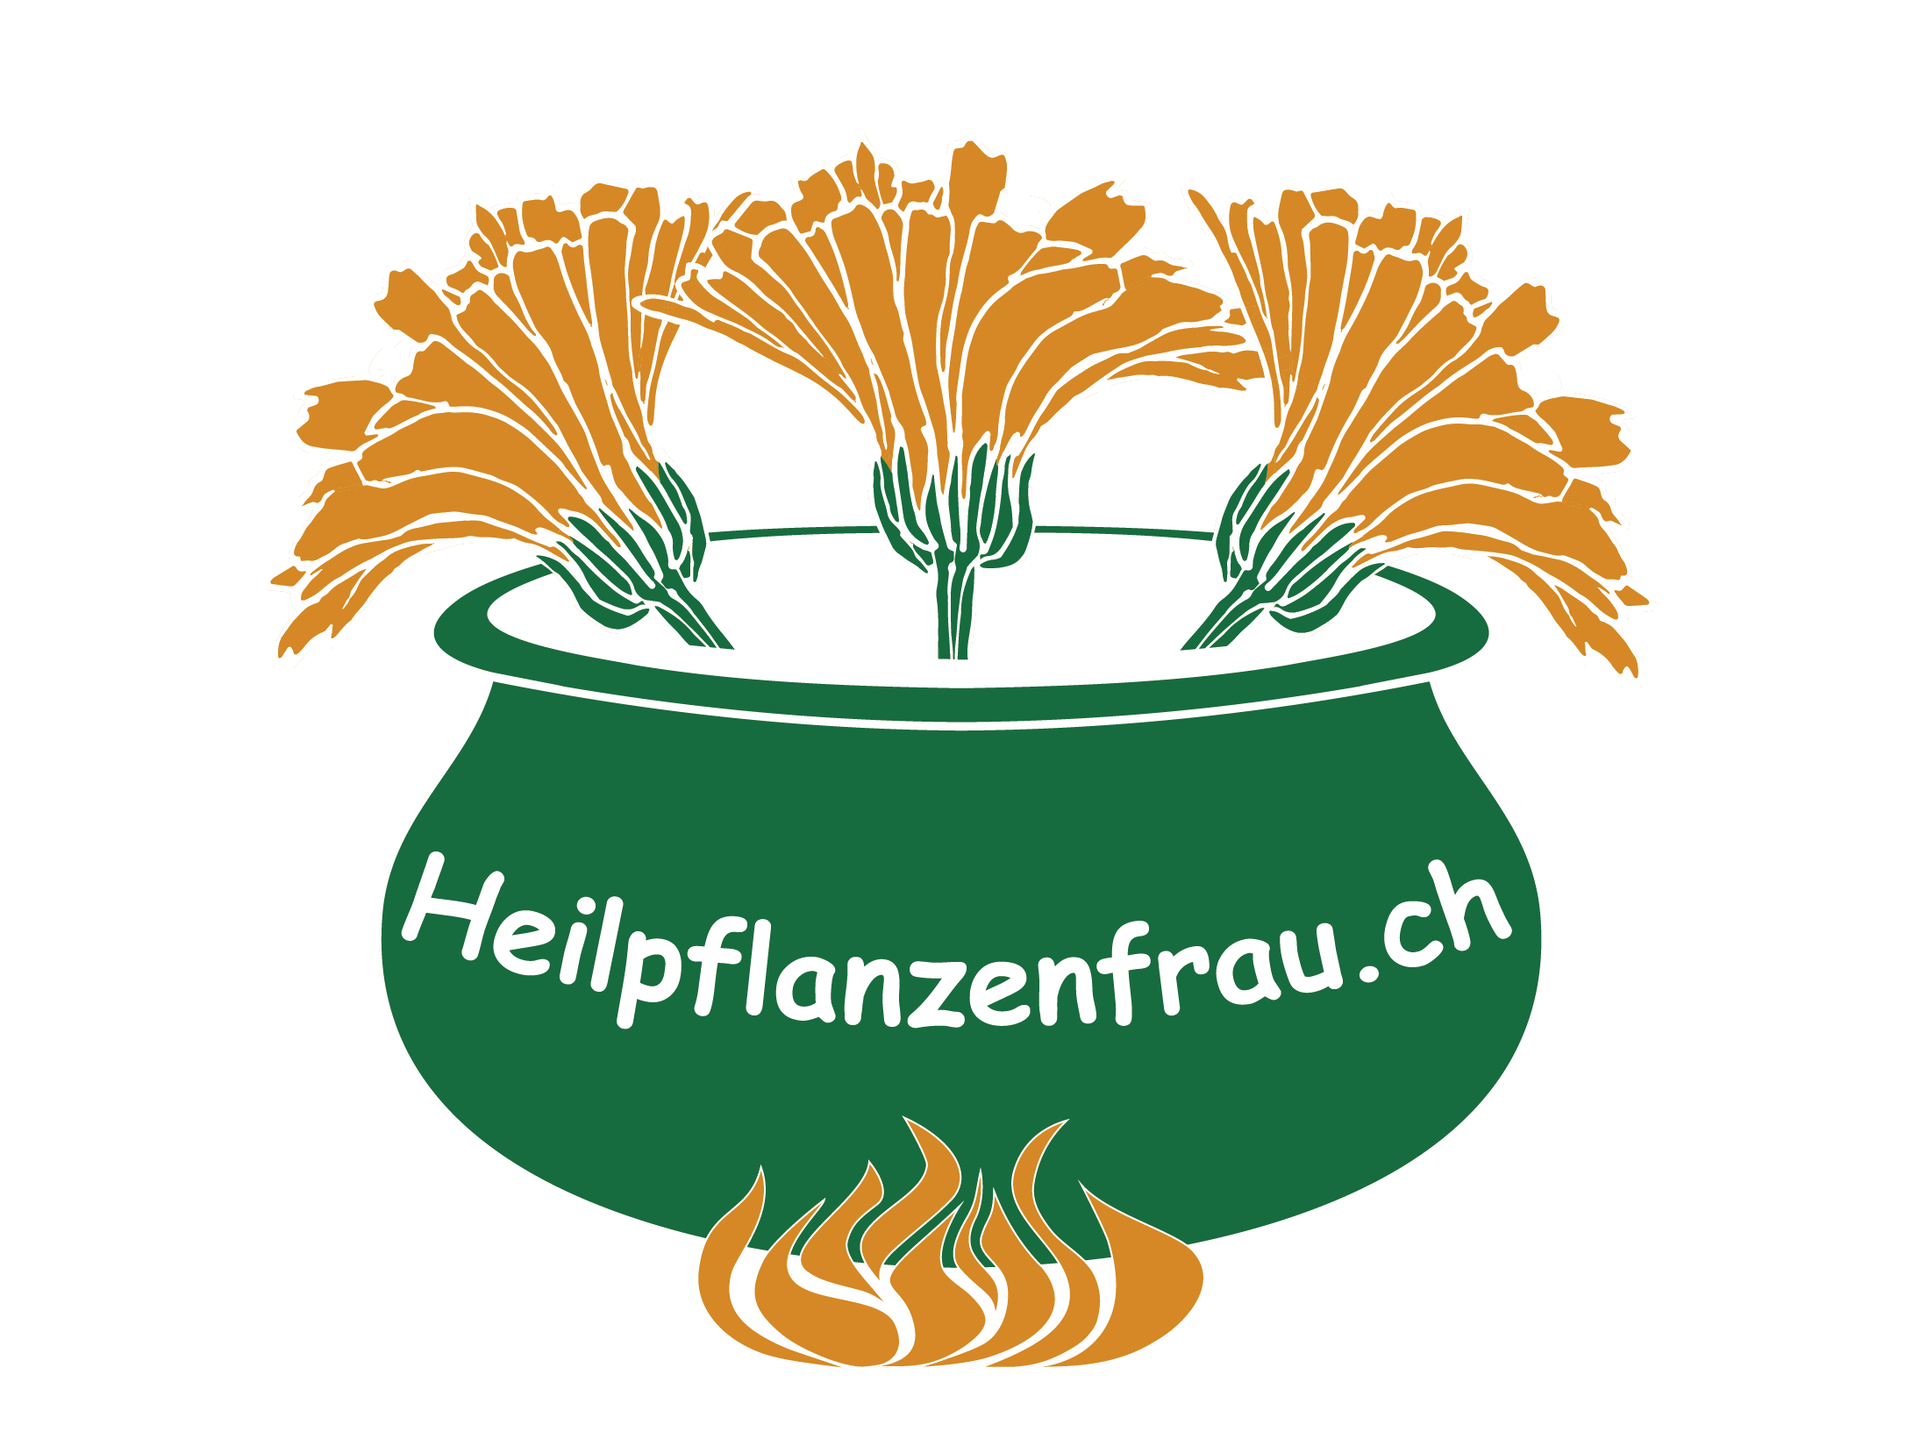 (c) Heilpflanzenfrau.ch